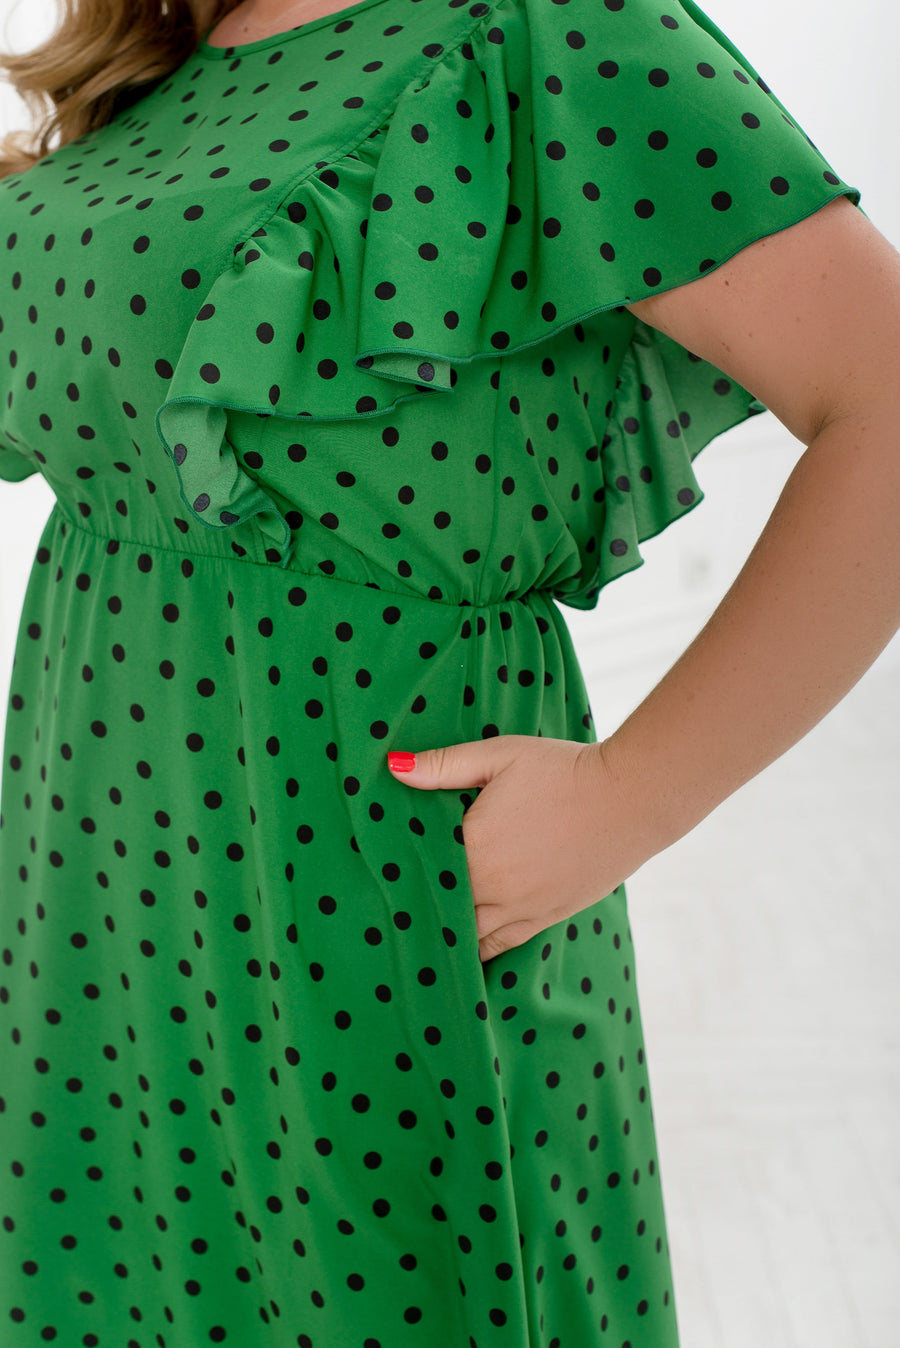 Polka dot knee-length dress